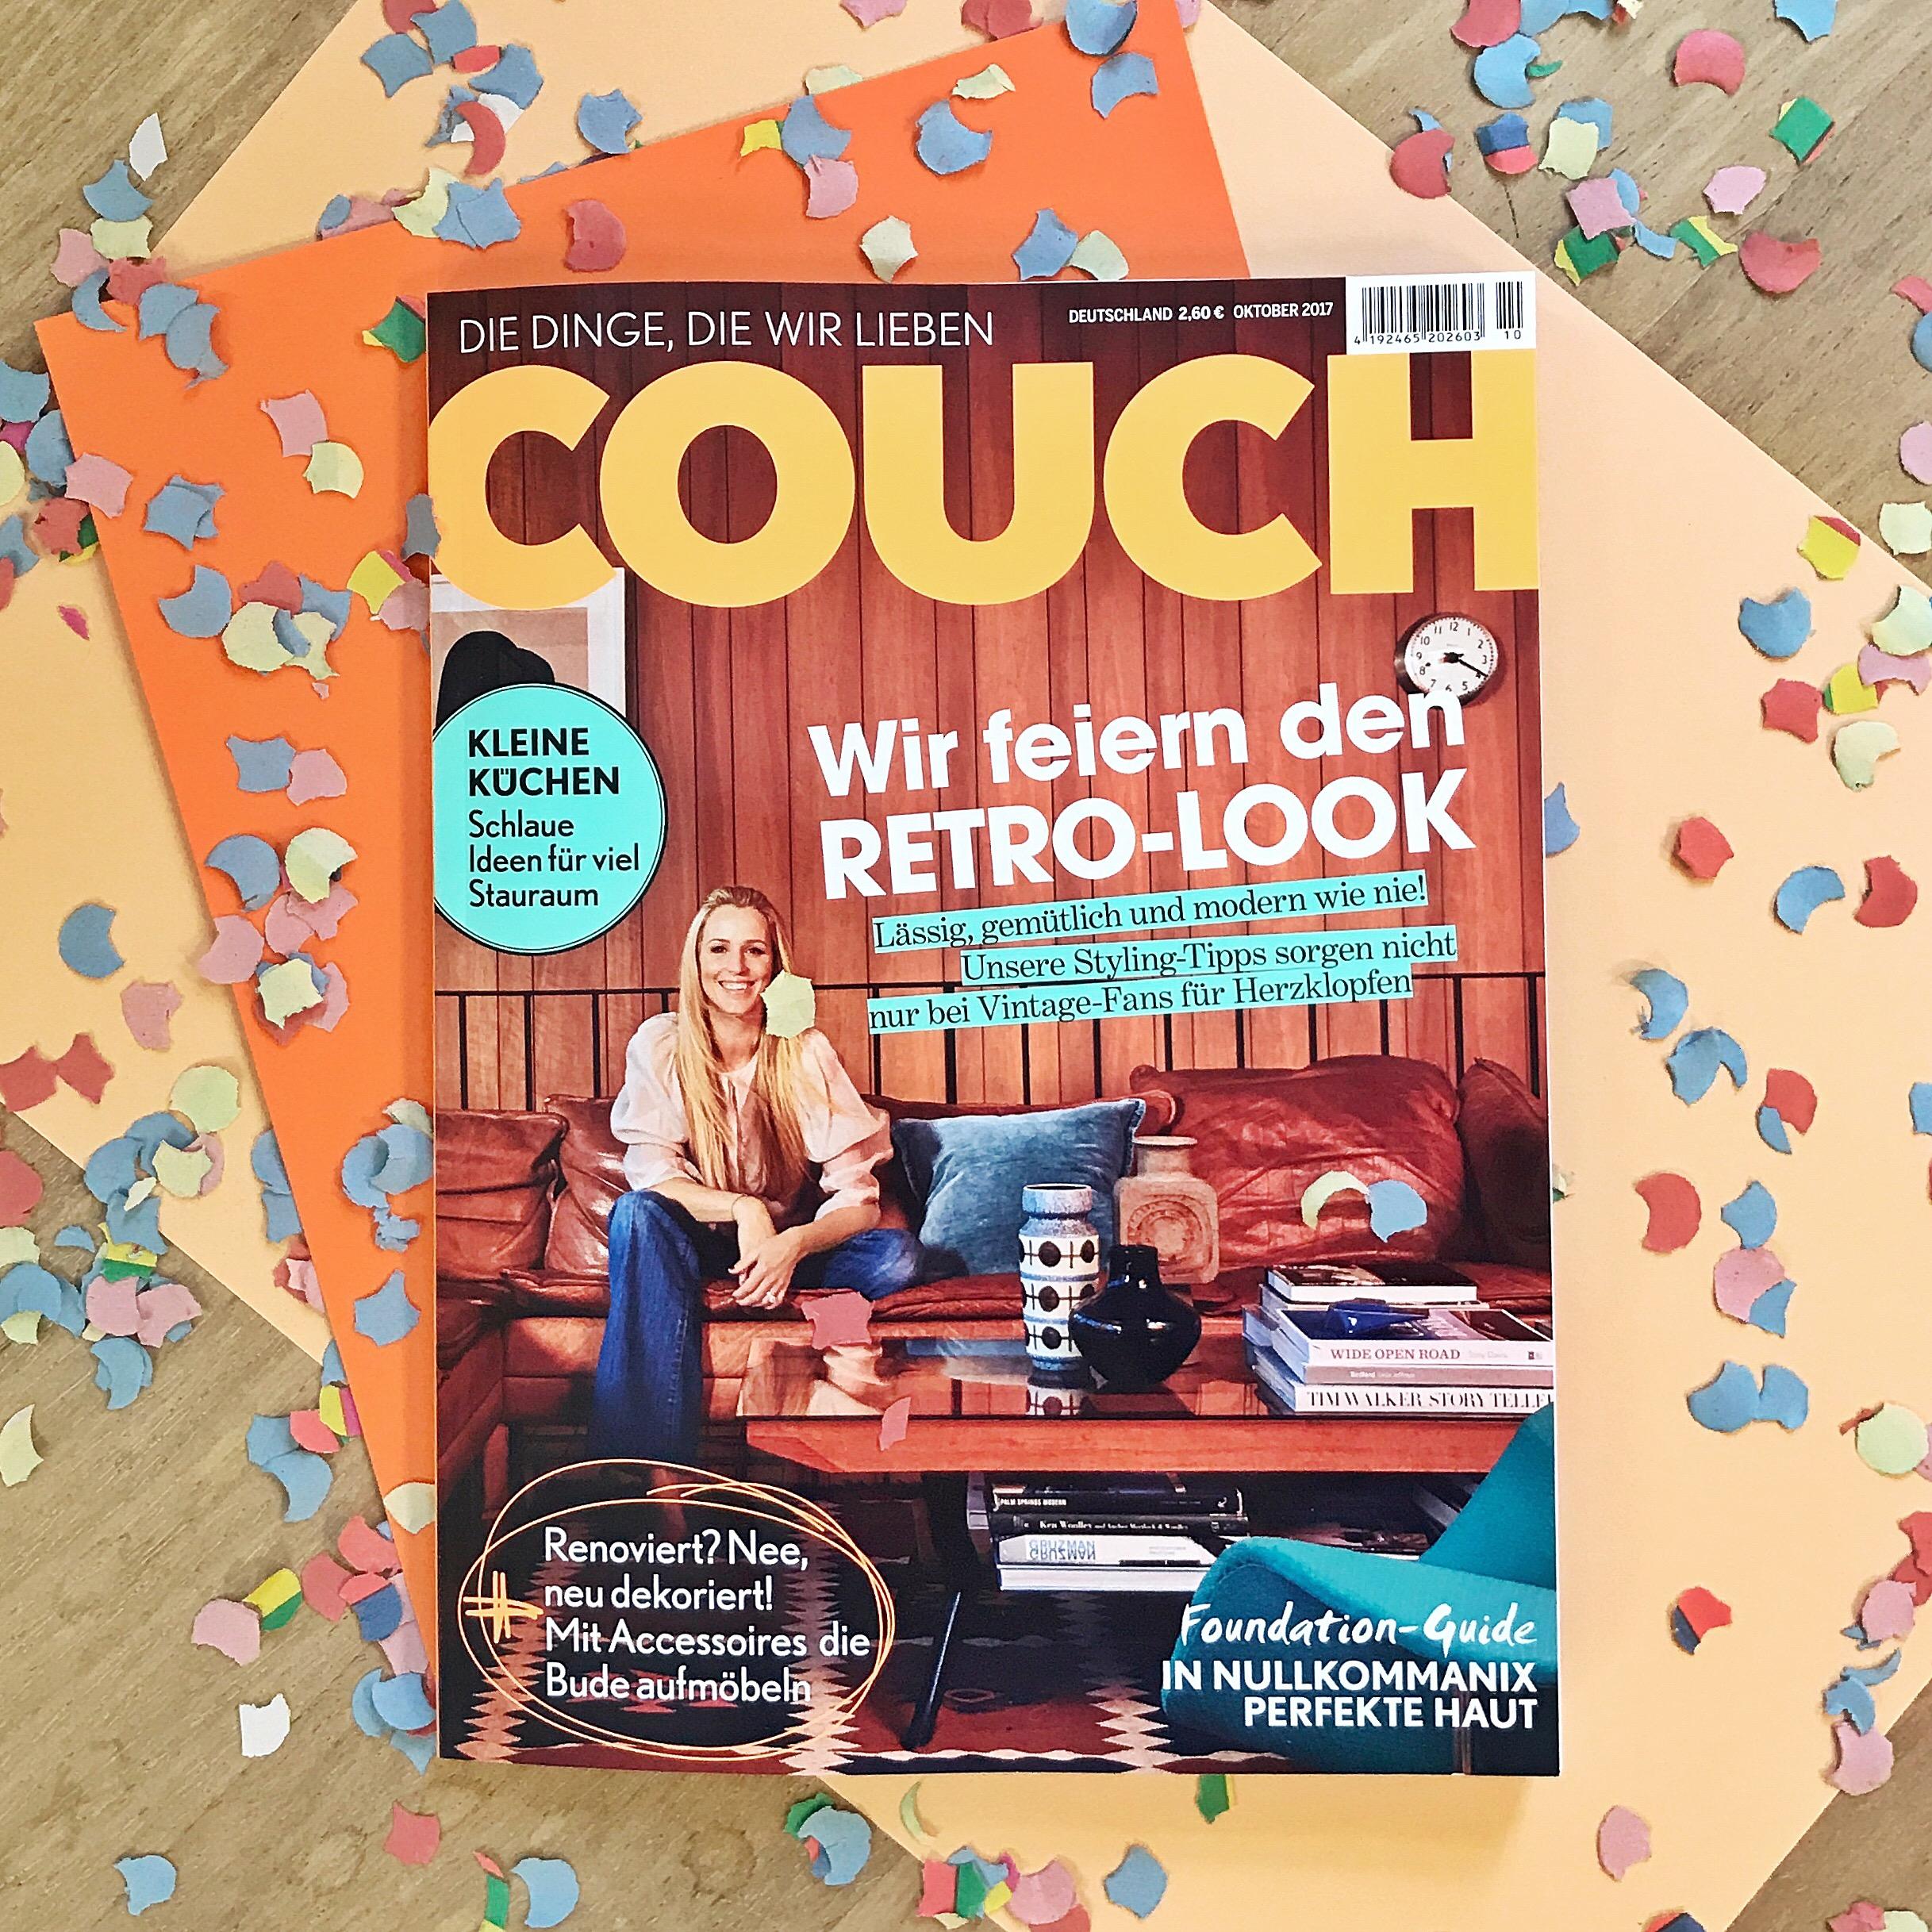 Ab heute am Kiosk: Die neue Ausgabe der COUCH ?!
 #couchmagazin #couchabo #retro #küche #stauraum